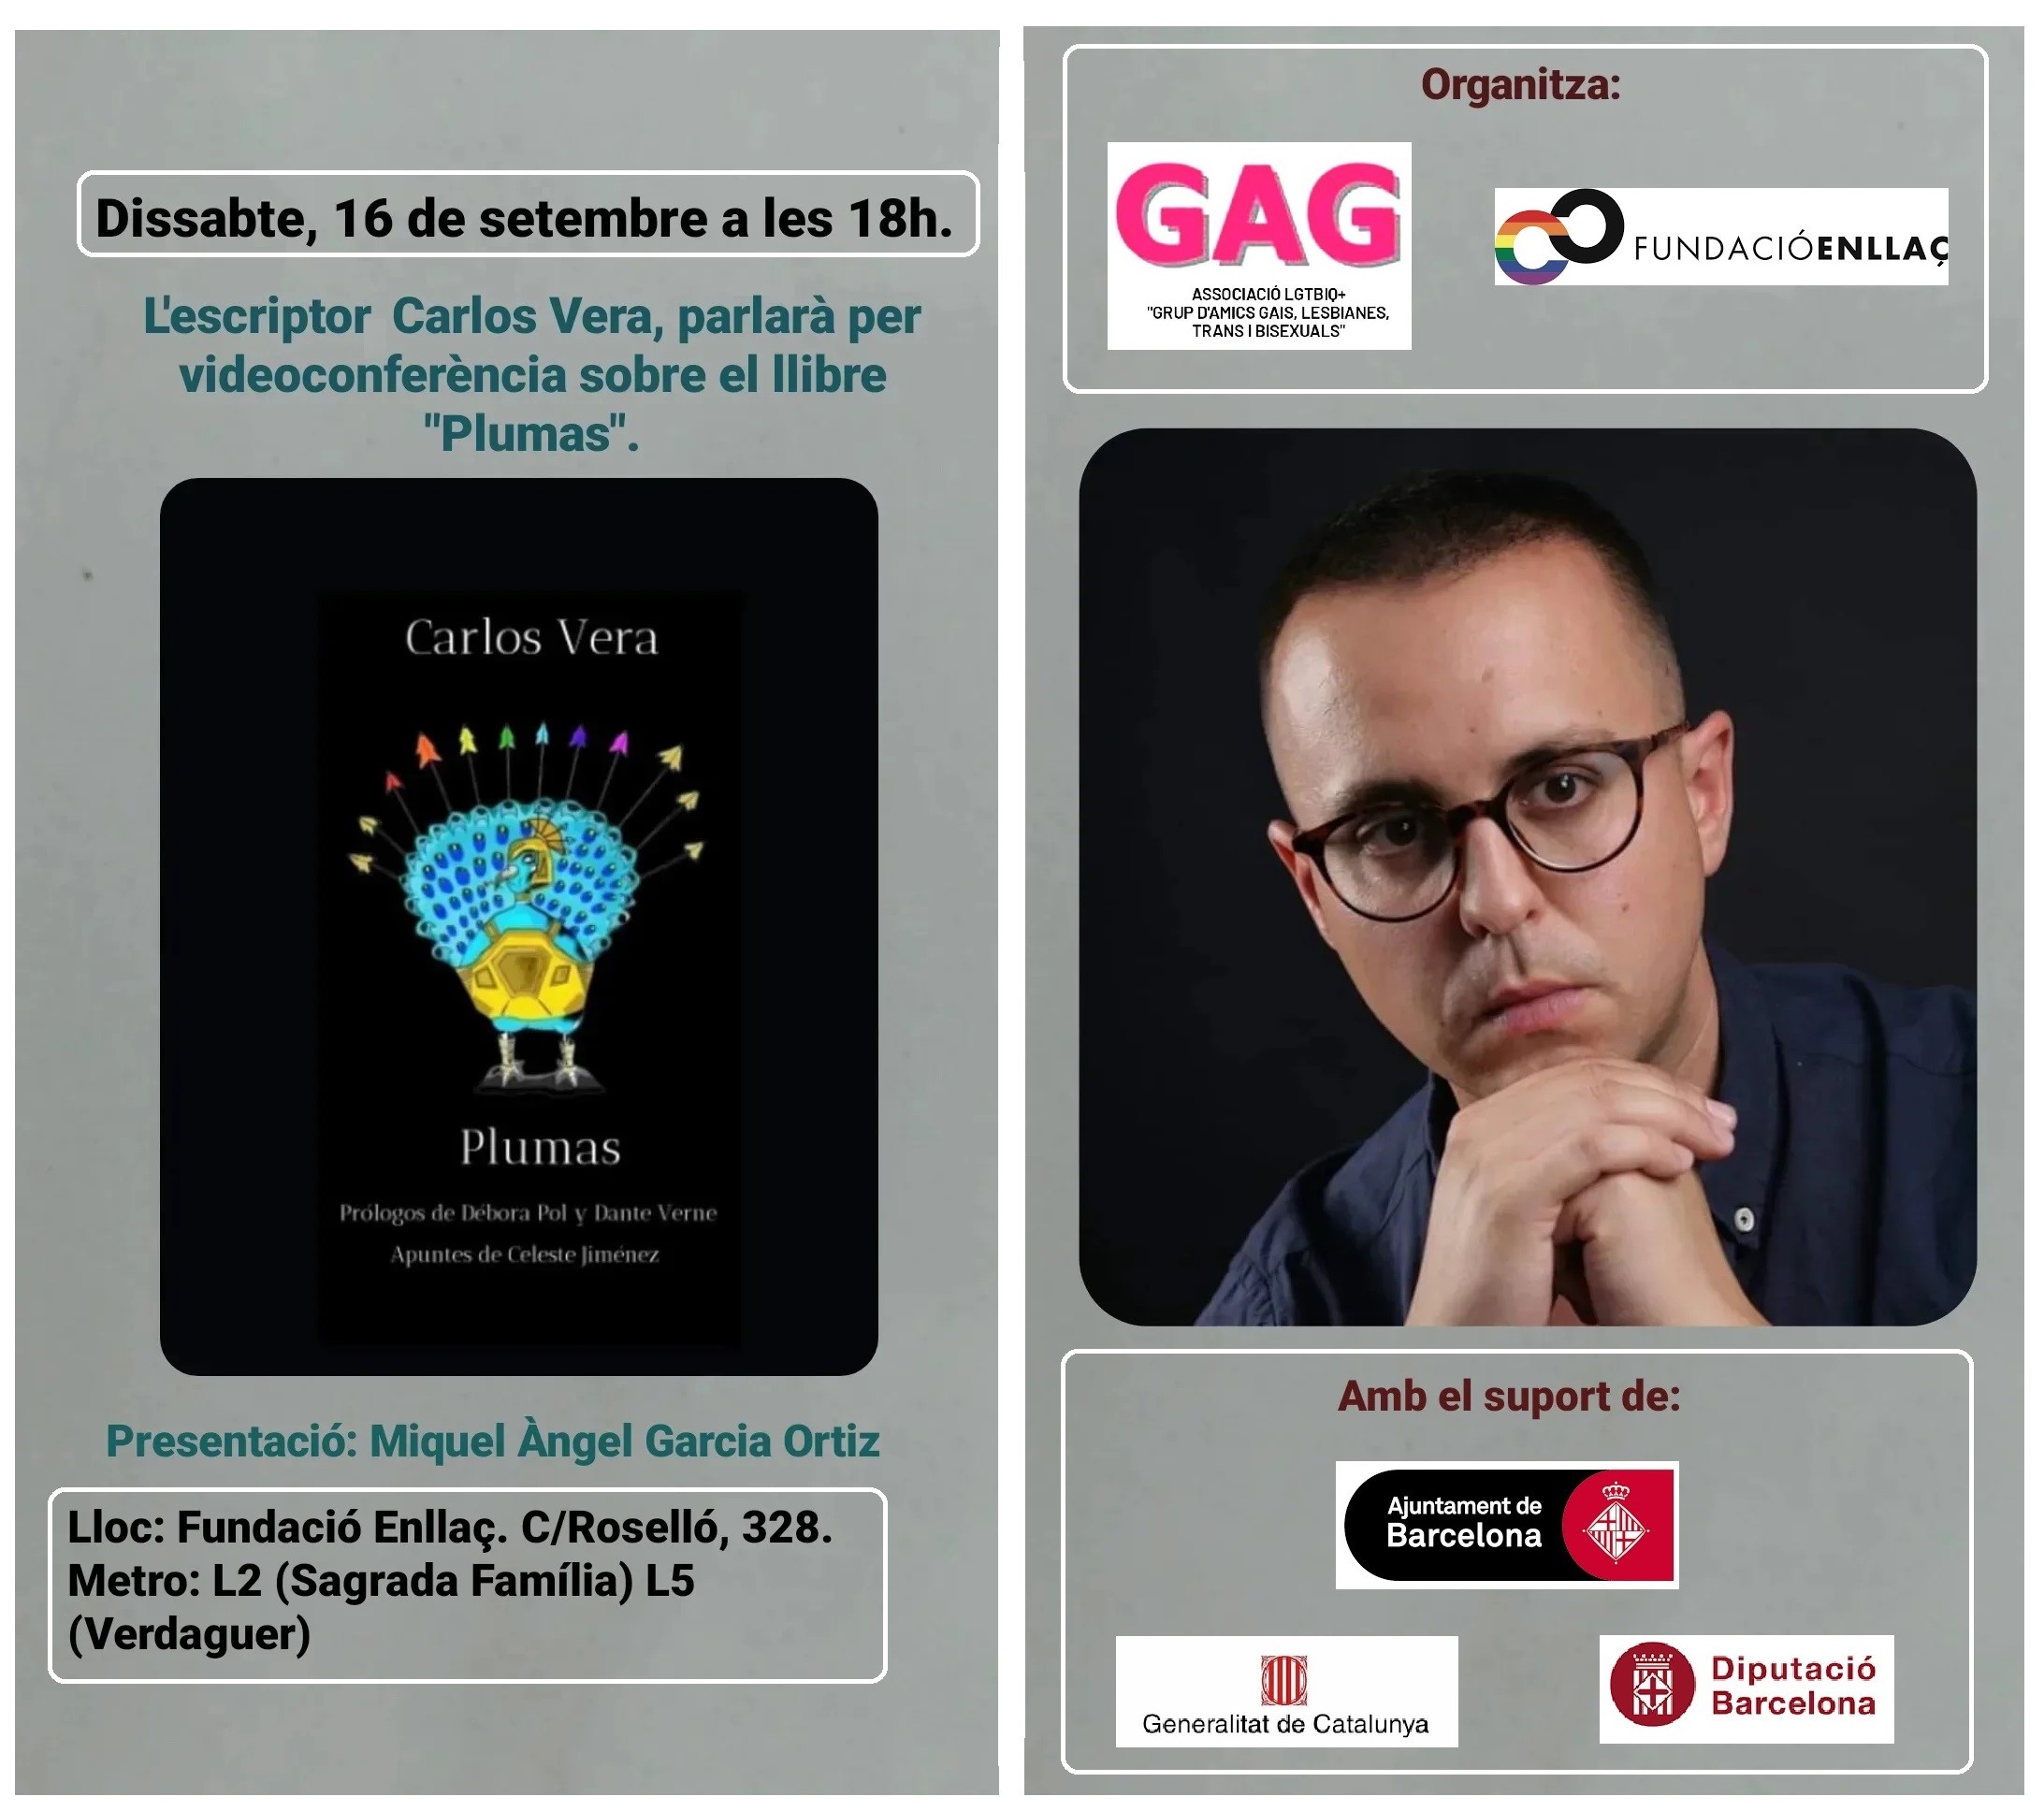 Dissabte, 16 de setembre a les 18h: Videoconferència amb l’escriptor Carlos Vera